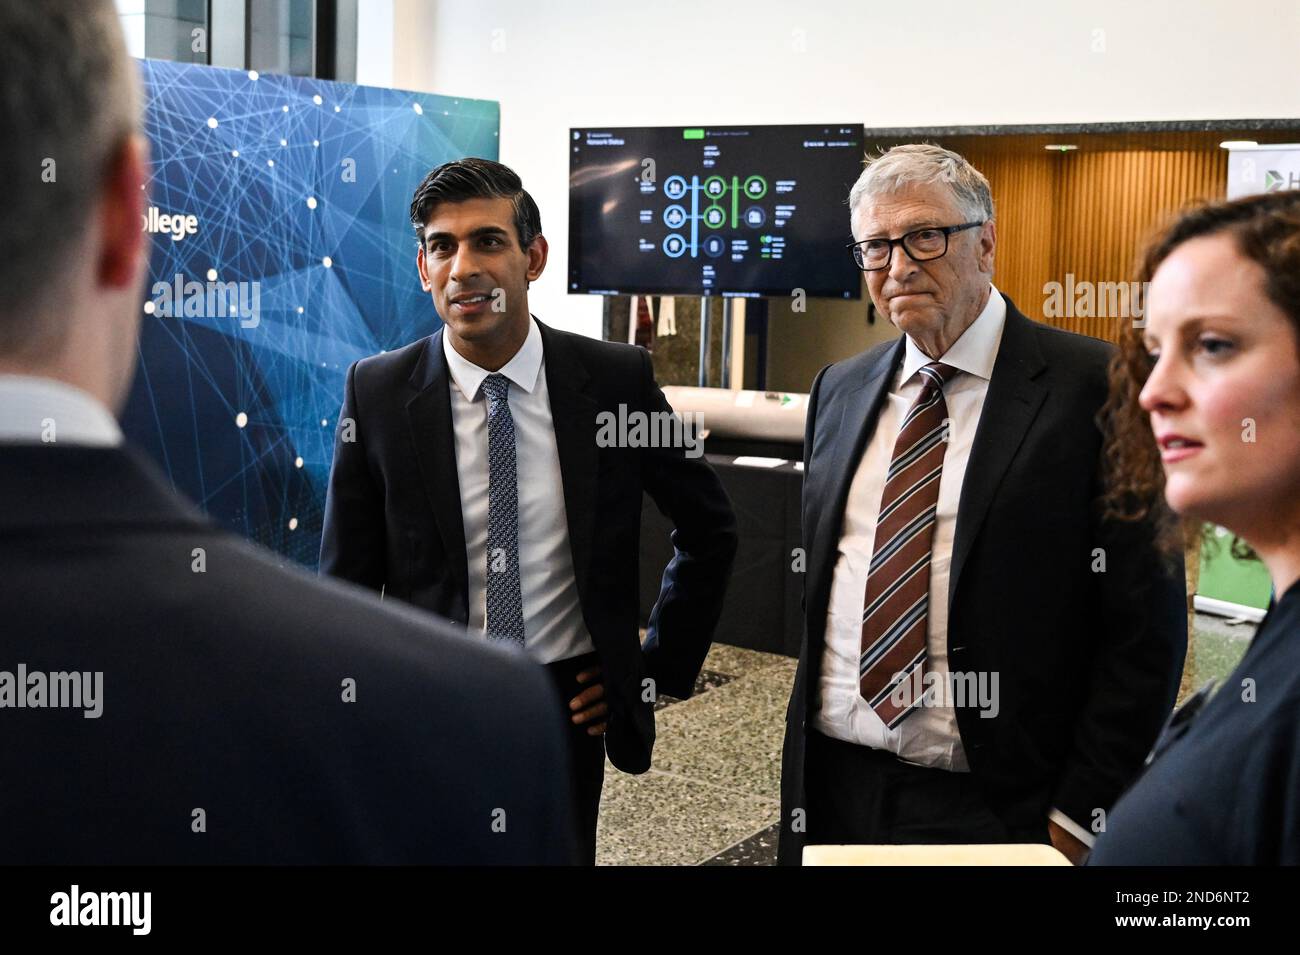 Premierminister Rishi Sunak und Milliardär Bill Gates bei einem Treffen am Imperial College London mit Mitgliedern von Econic, einem Start-up-Unternehmen, das Technologien entwickelt, die die Verwendung von abgeschiedenem CO2 zur Herstellung kostengünstiger und nachhaltiger Kunststoffe ermöglichen. Bilddatum: Mittwoch, 15. Februar 2023. Stockfoto